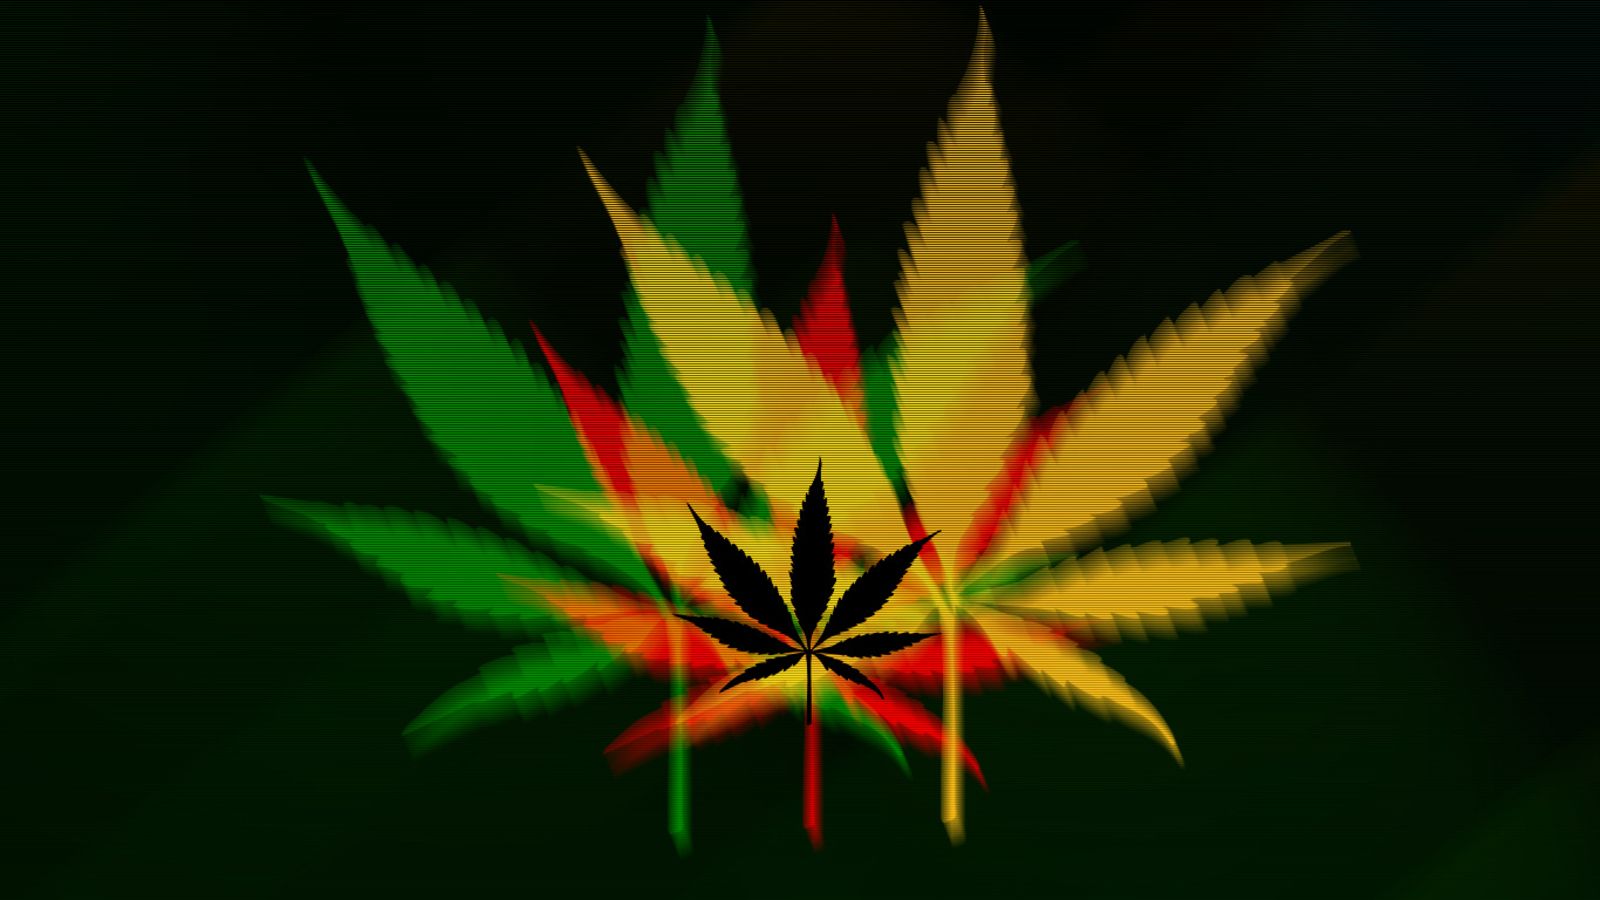 Скачать картинки на телефон бесплатно марихуана гангрена от наркотиков